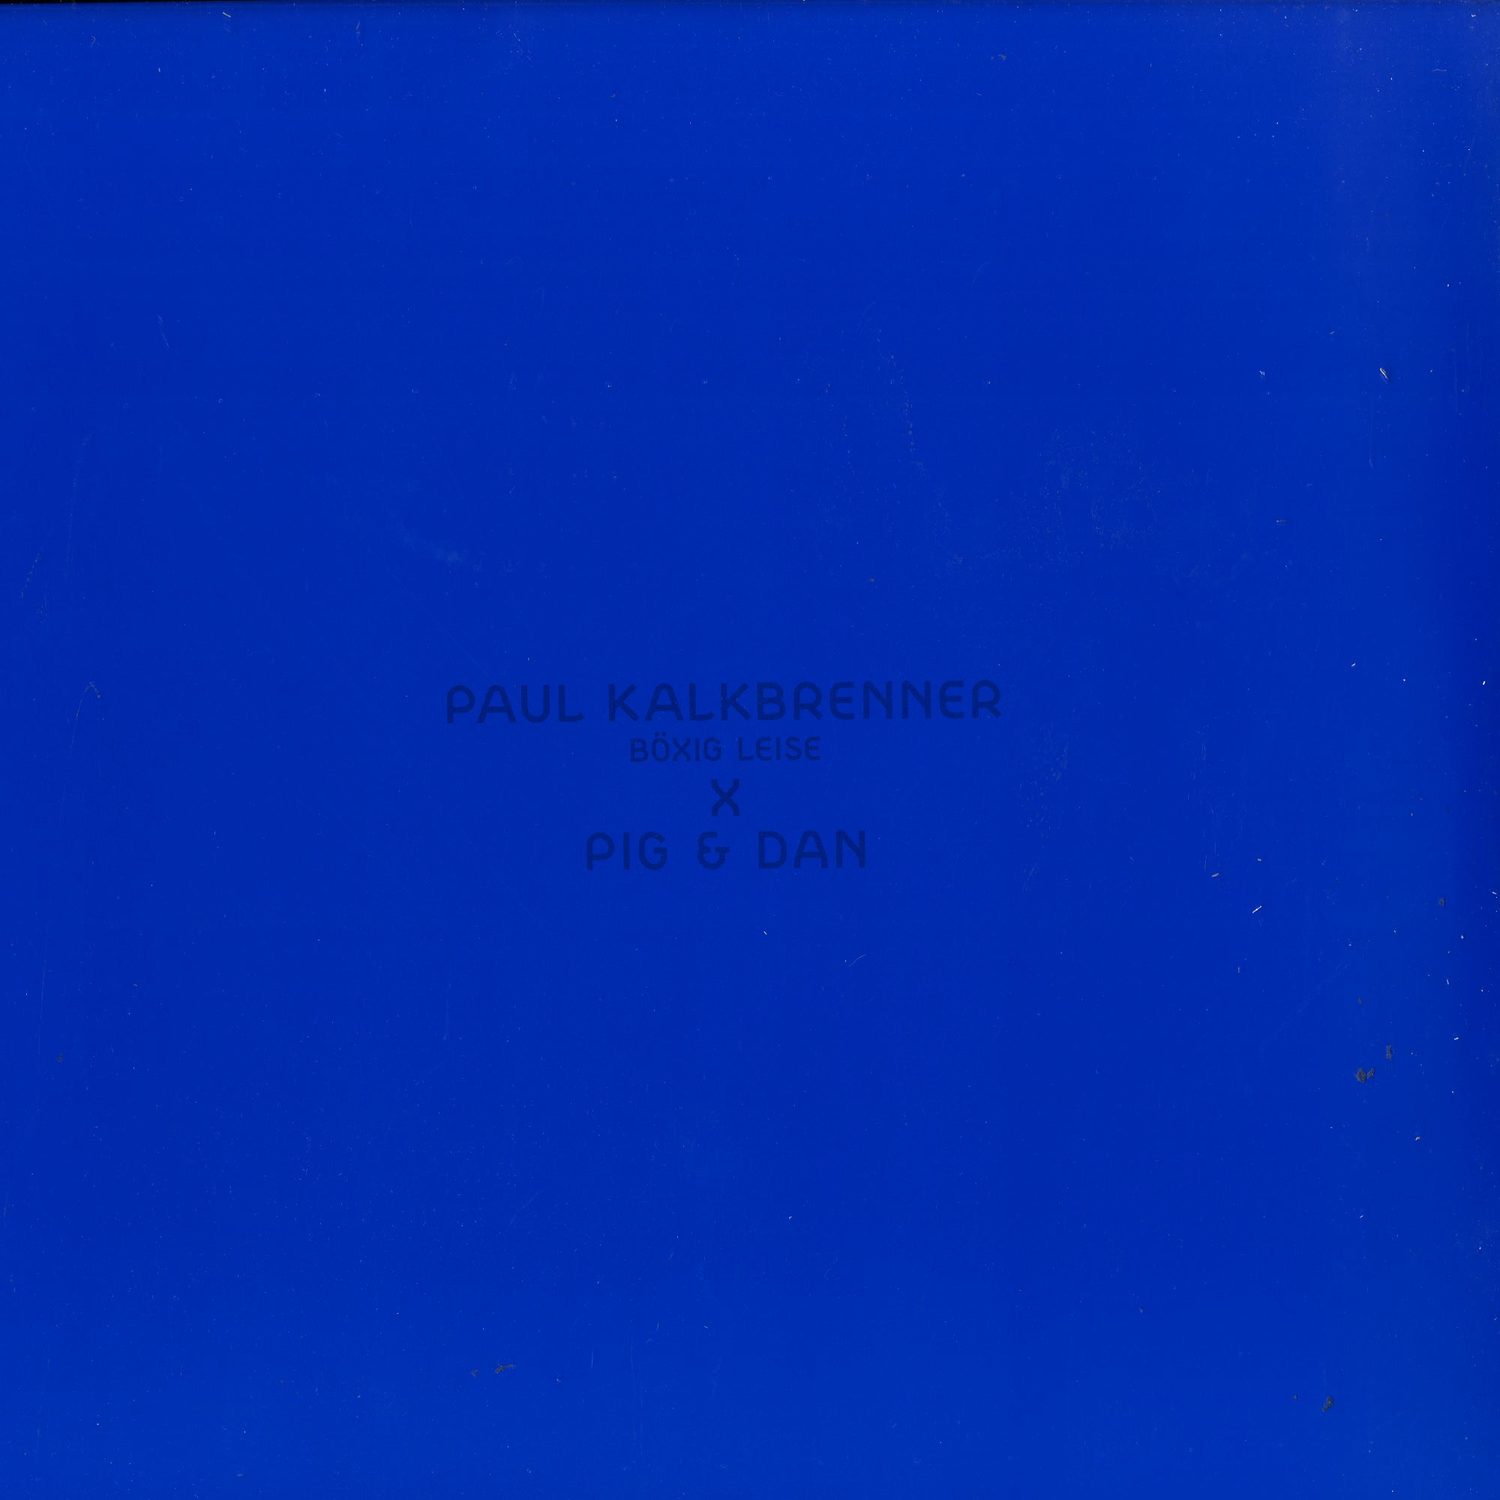 Paul Kalkbrenner - BOEXIG LEISE 